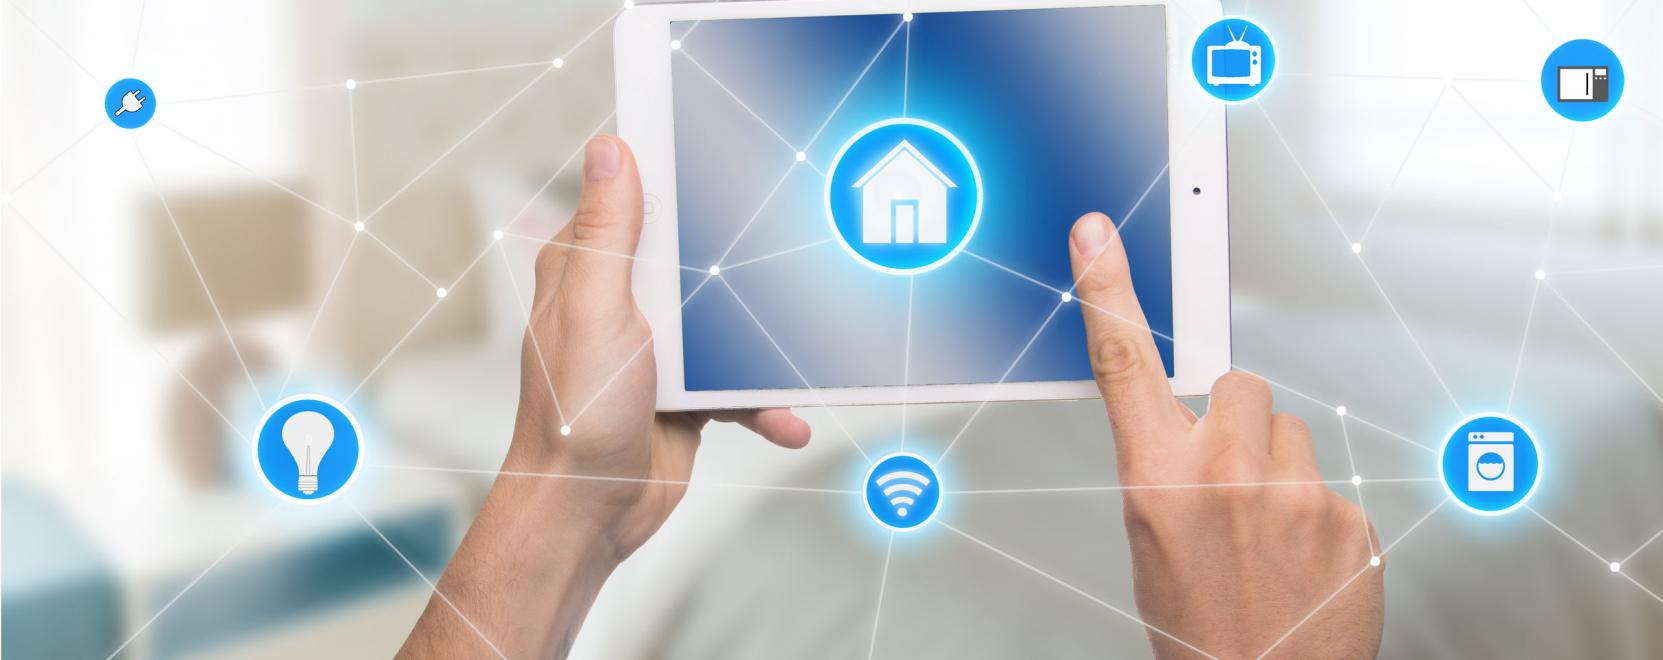 Keskenysávú IoT-rendszerrel lehetnek okosabbak az otthonok